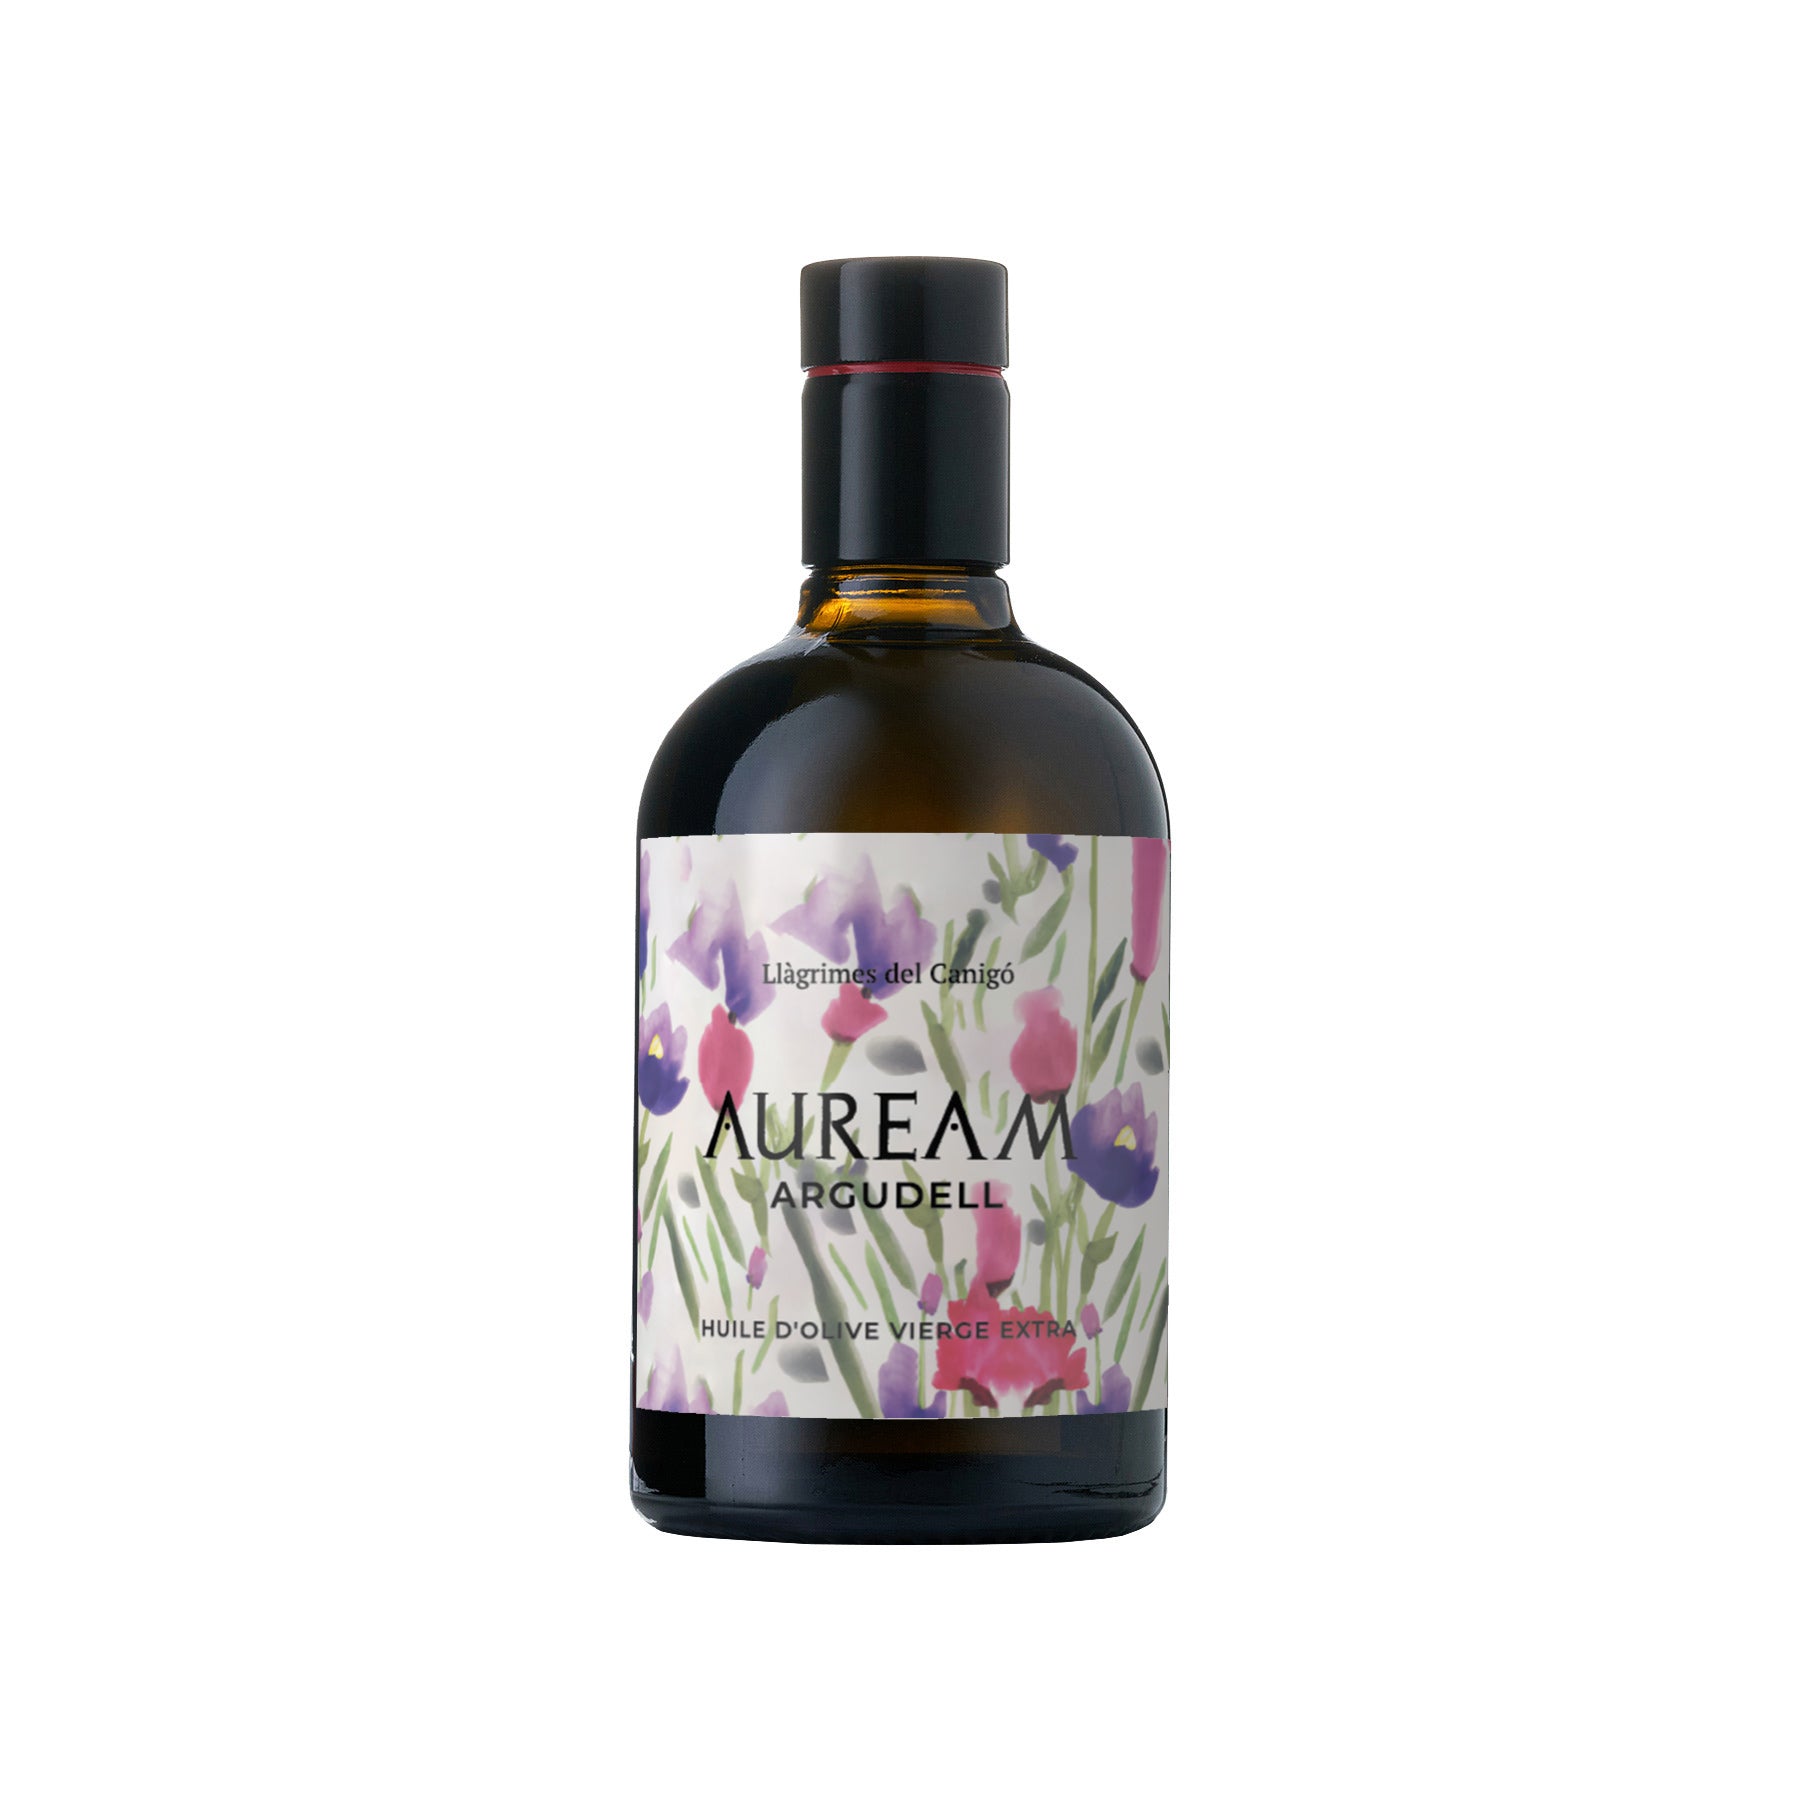 Auream Argudell - Aceite de Oliva Virgen Extra 0,5L